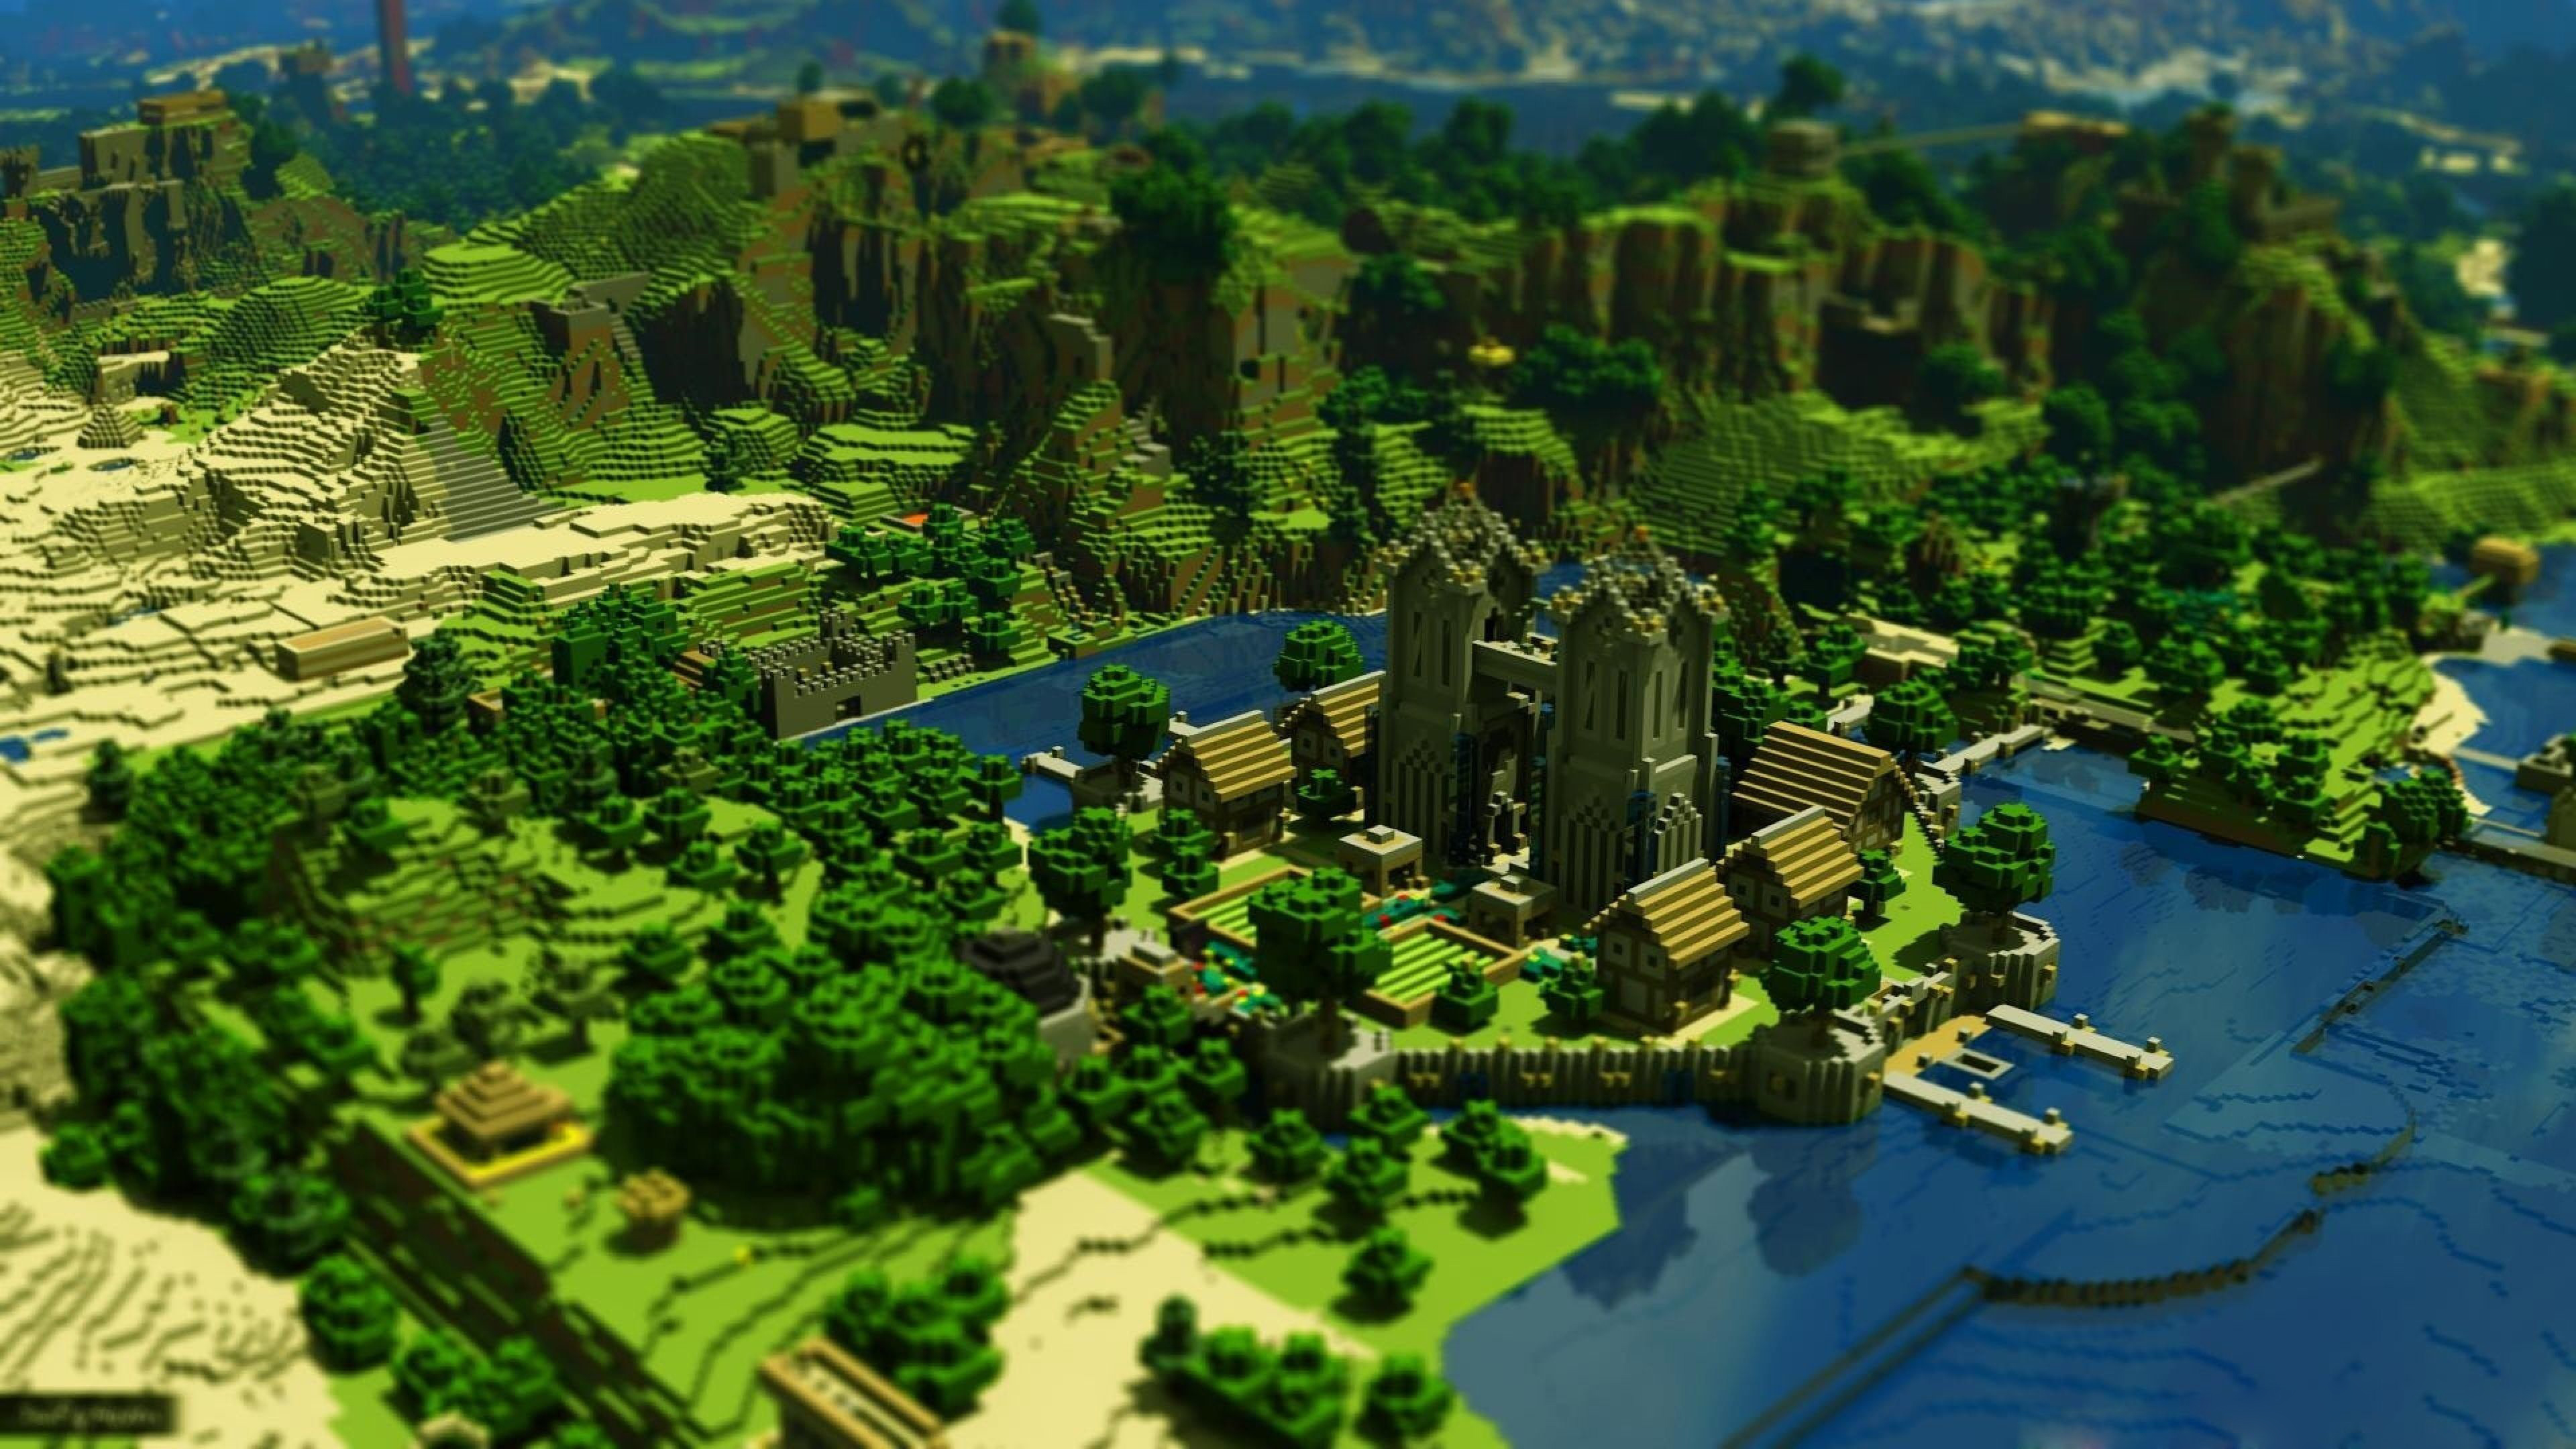 Tận hưởng khoảnh khắc chơi game Minecraft độ phân giải cao với những hình nền Minecraft 4K backgrounds đẹp mắt tại đây. Hãy nhấn vào hình ảnh để trải nghiệm và vô cùng hài lòng với chất lượng ảnh tuyệt vời này.